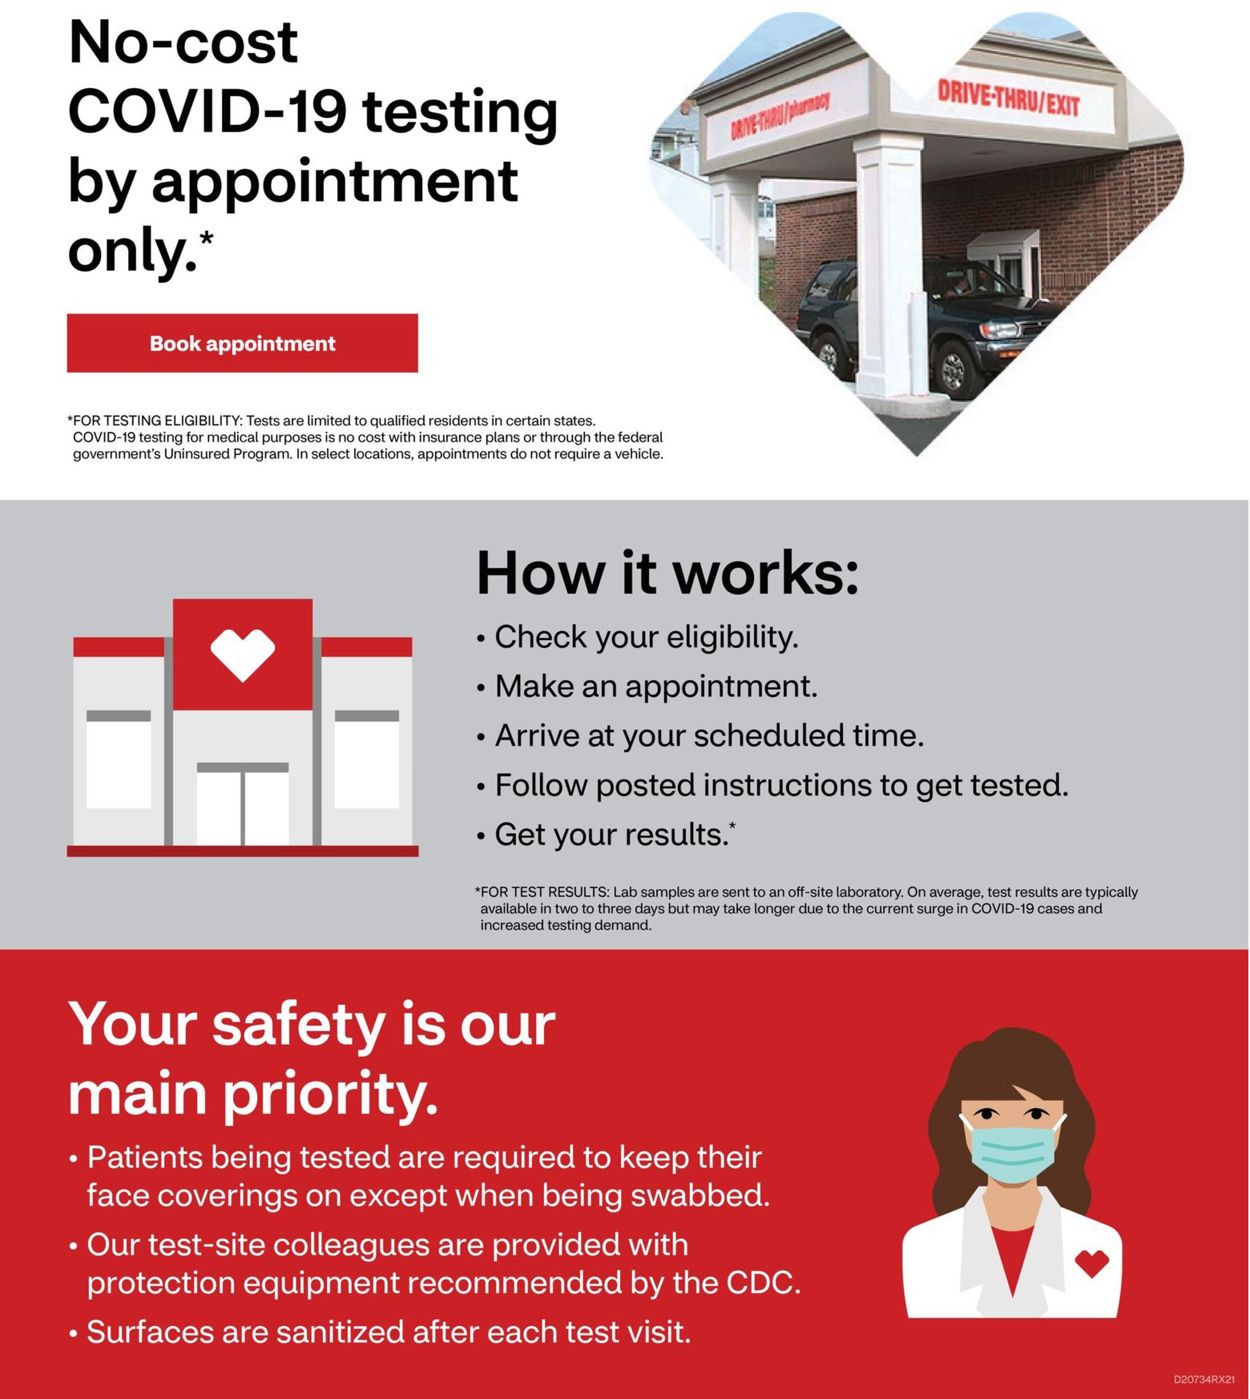 CVS Pharmacy Ad from 02/07/2021